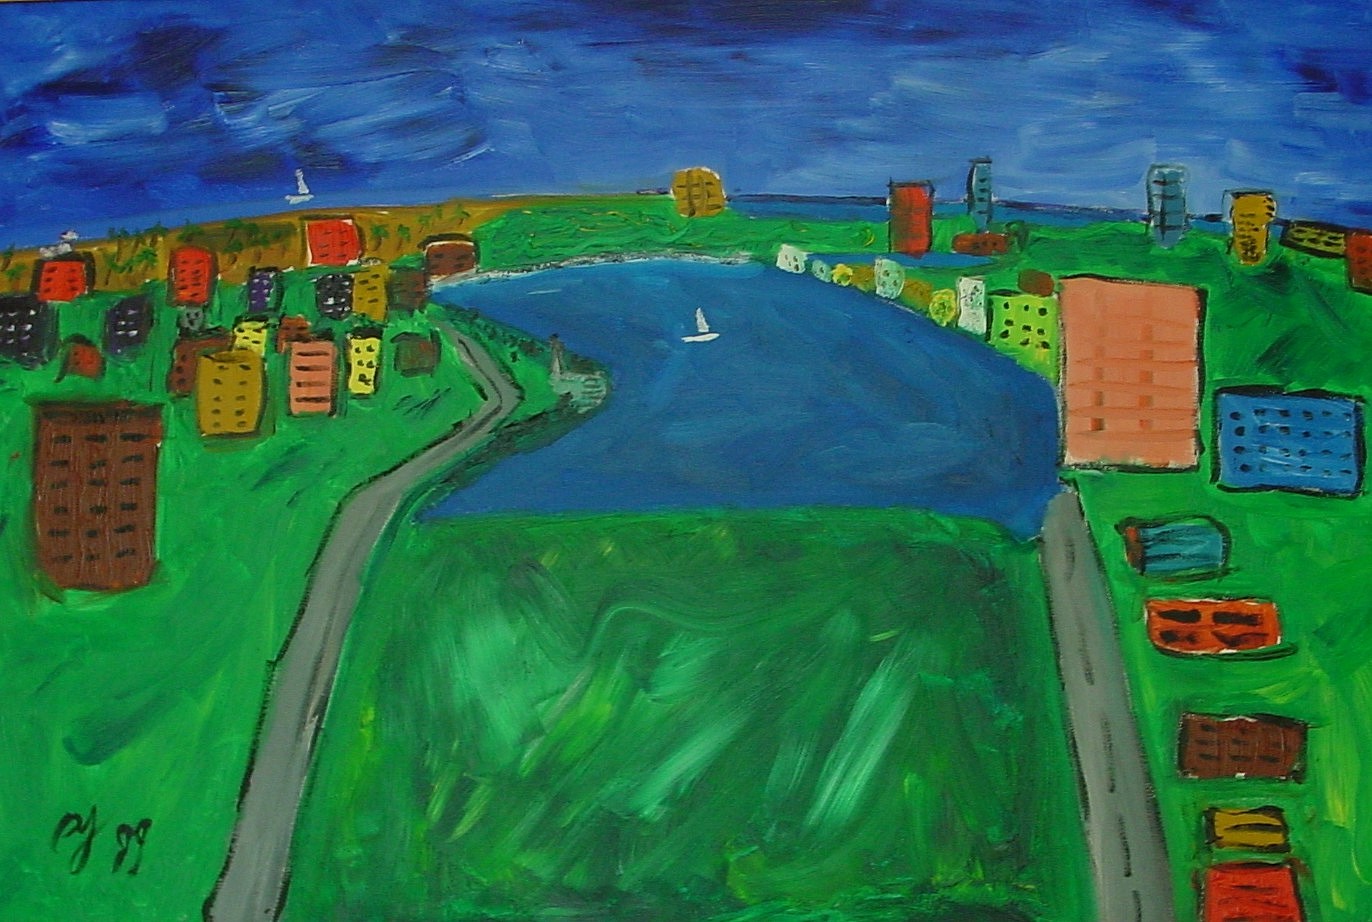 Diego Jacobson, Condado, 1999
Oil on Canvas, 30 x 40 in. (76.2 x 101.6 cm)
0025